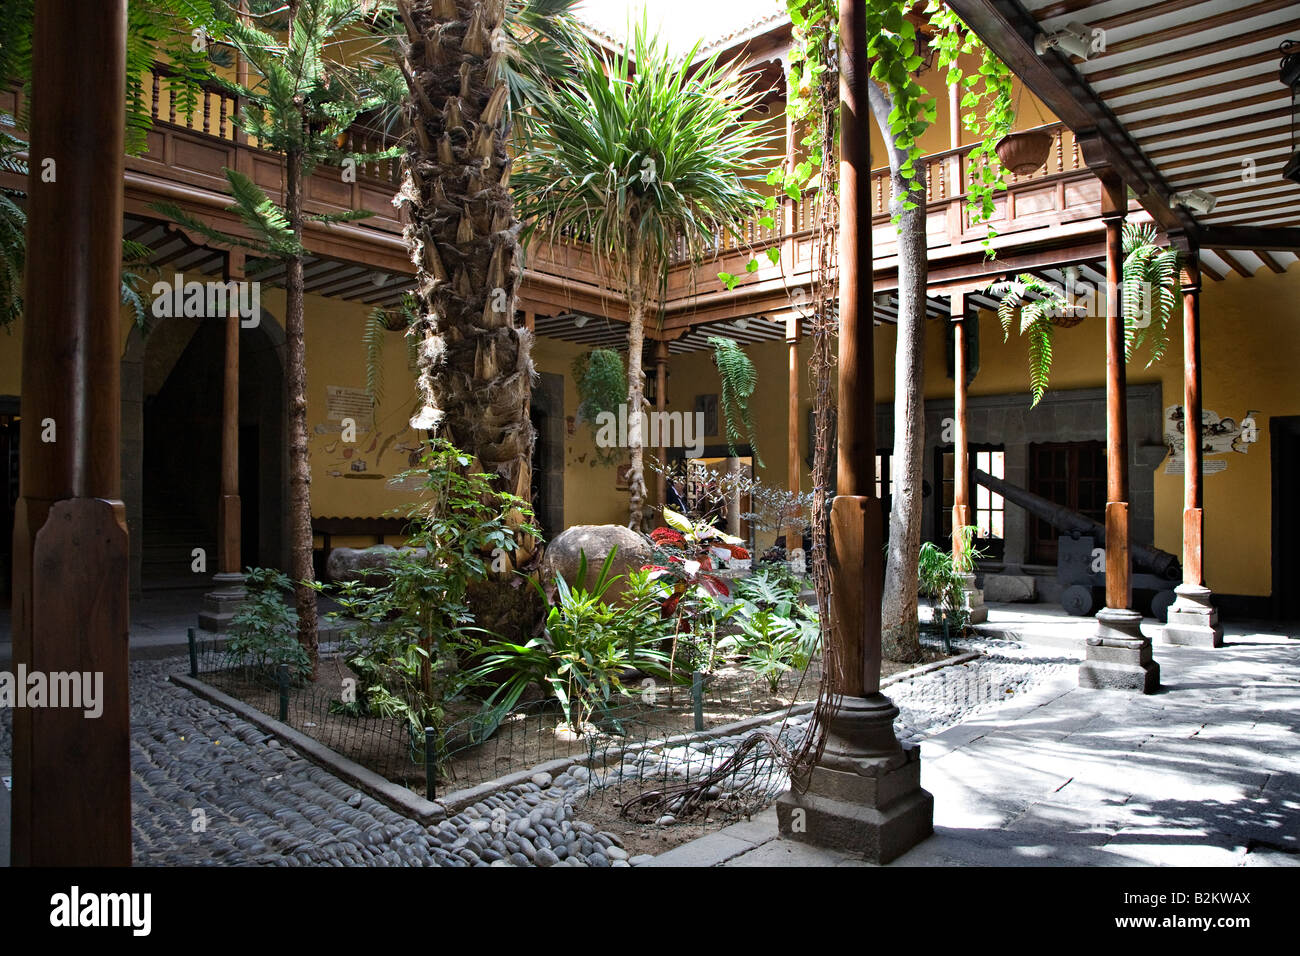 Central courtyard Casa de Colon (Columbus's house) Las Palmas Gran Canaria Spain Stock Photo